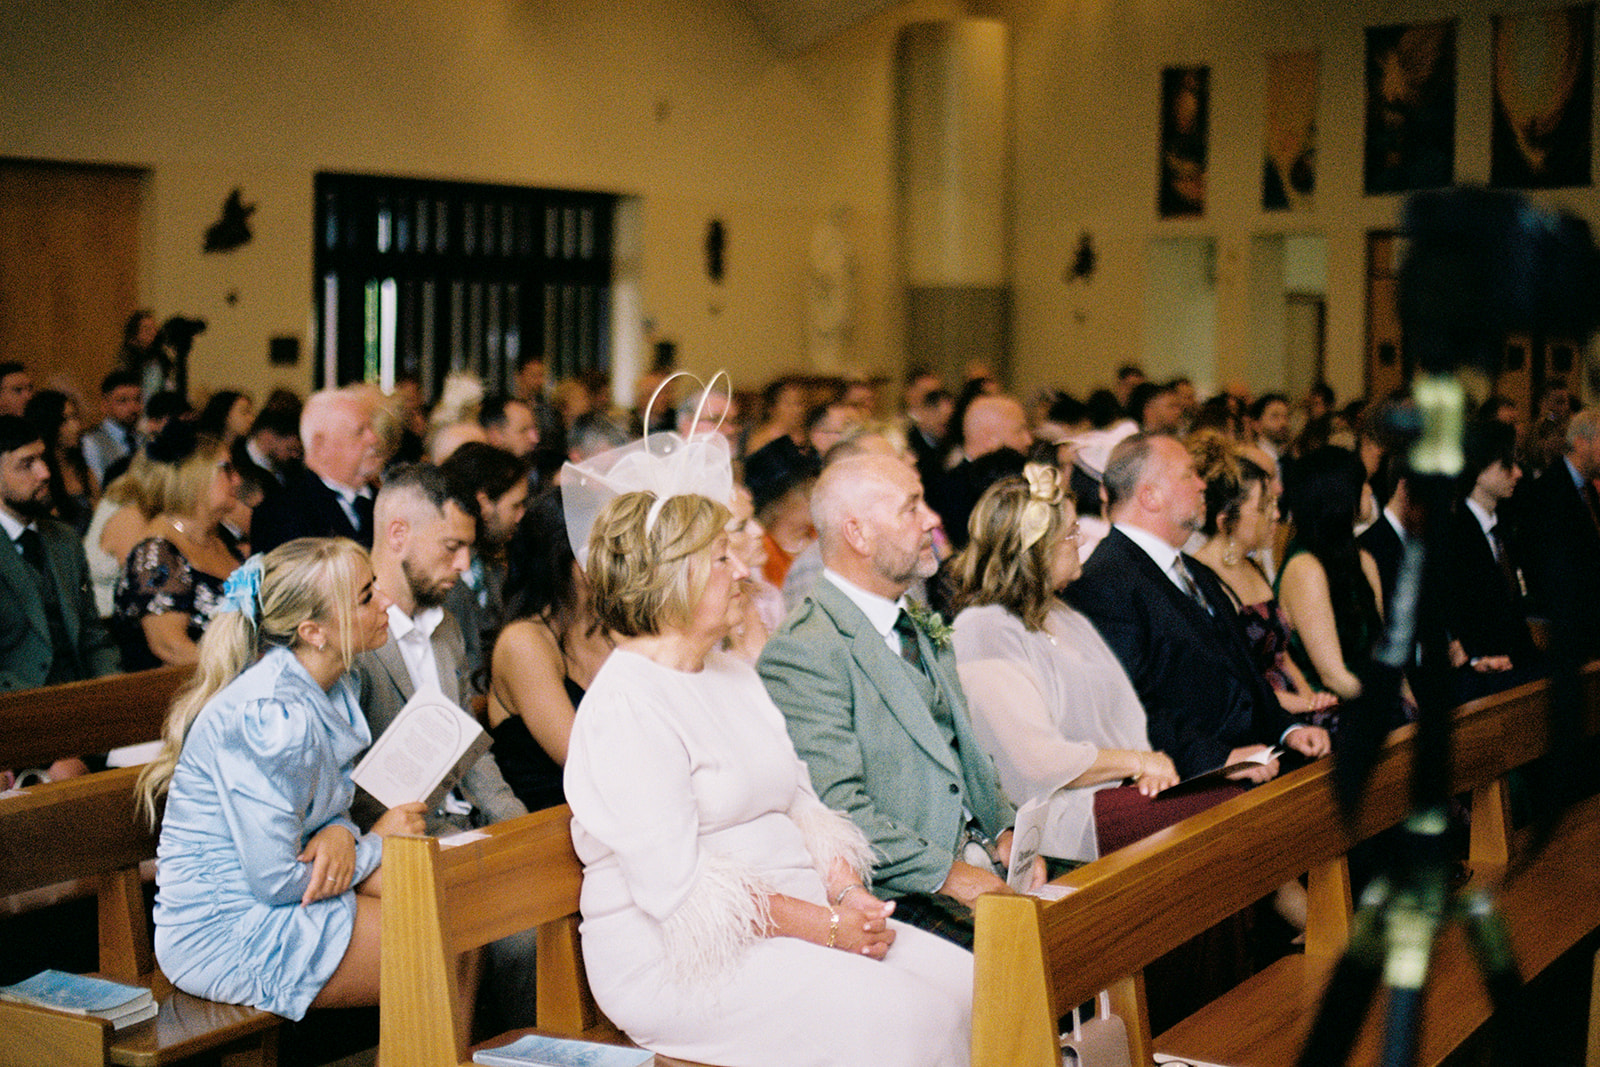 church wedding on film 